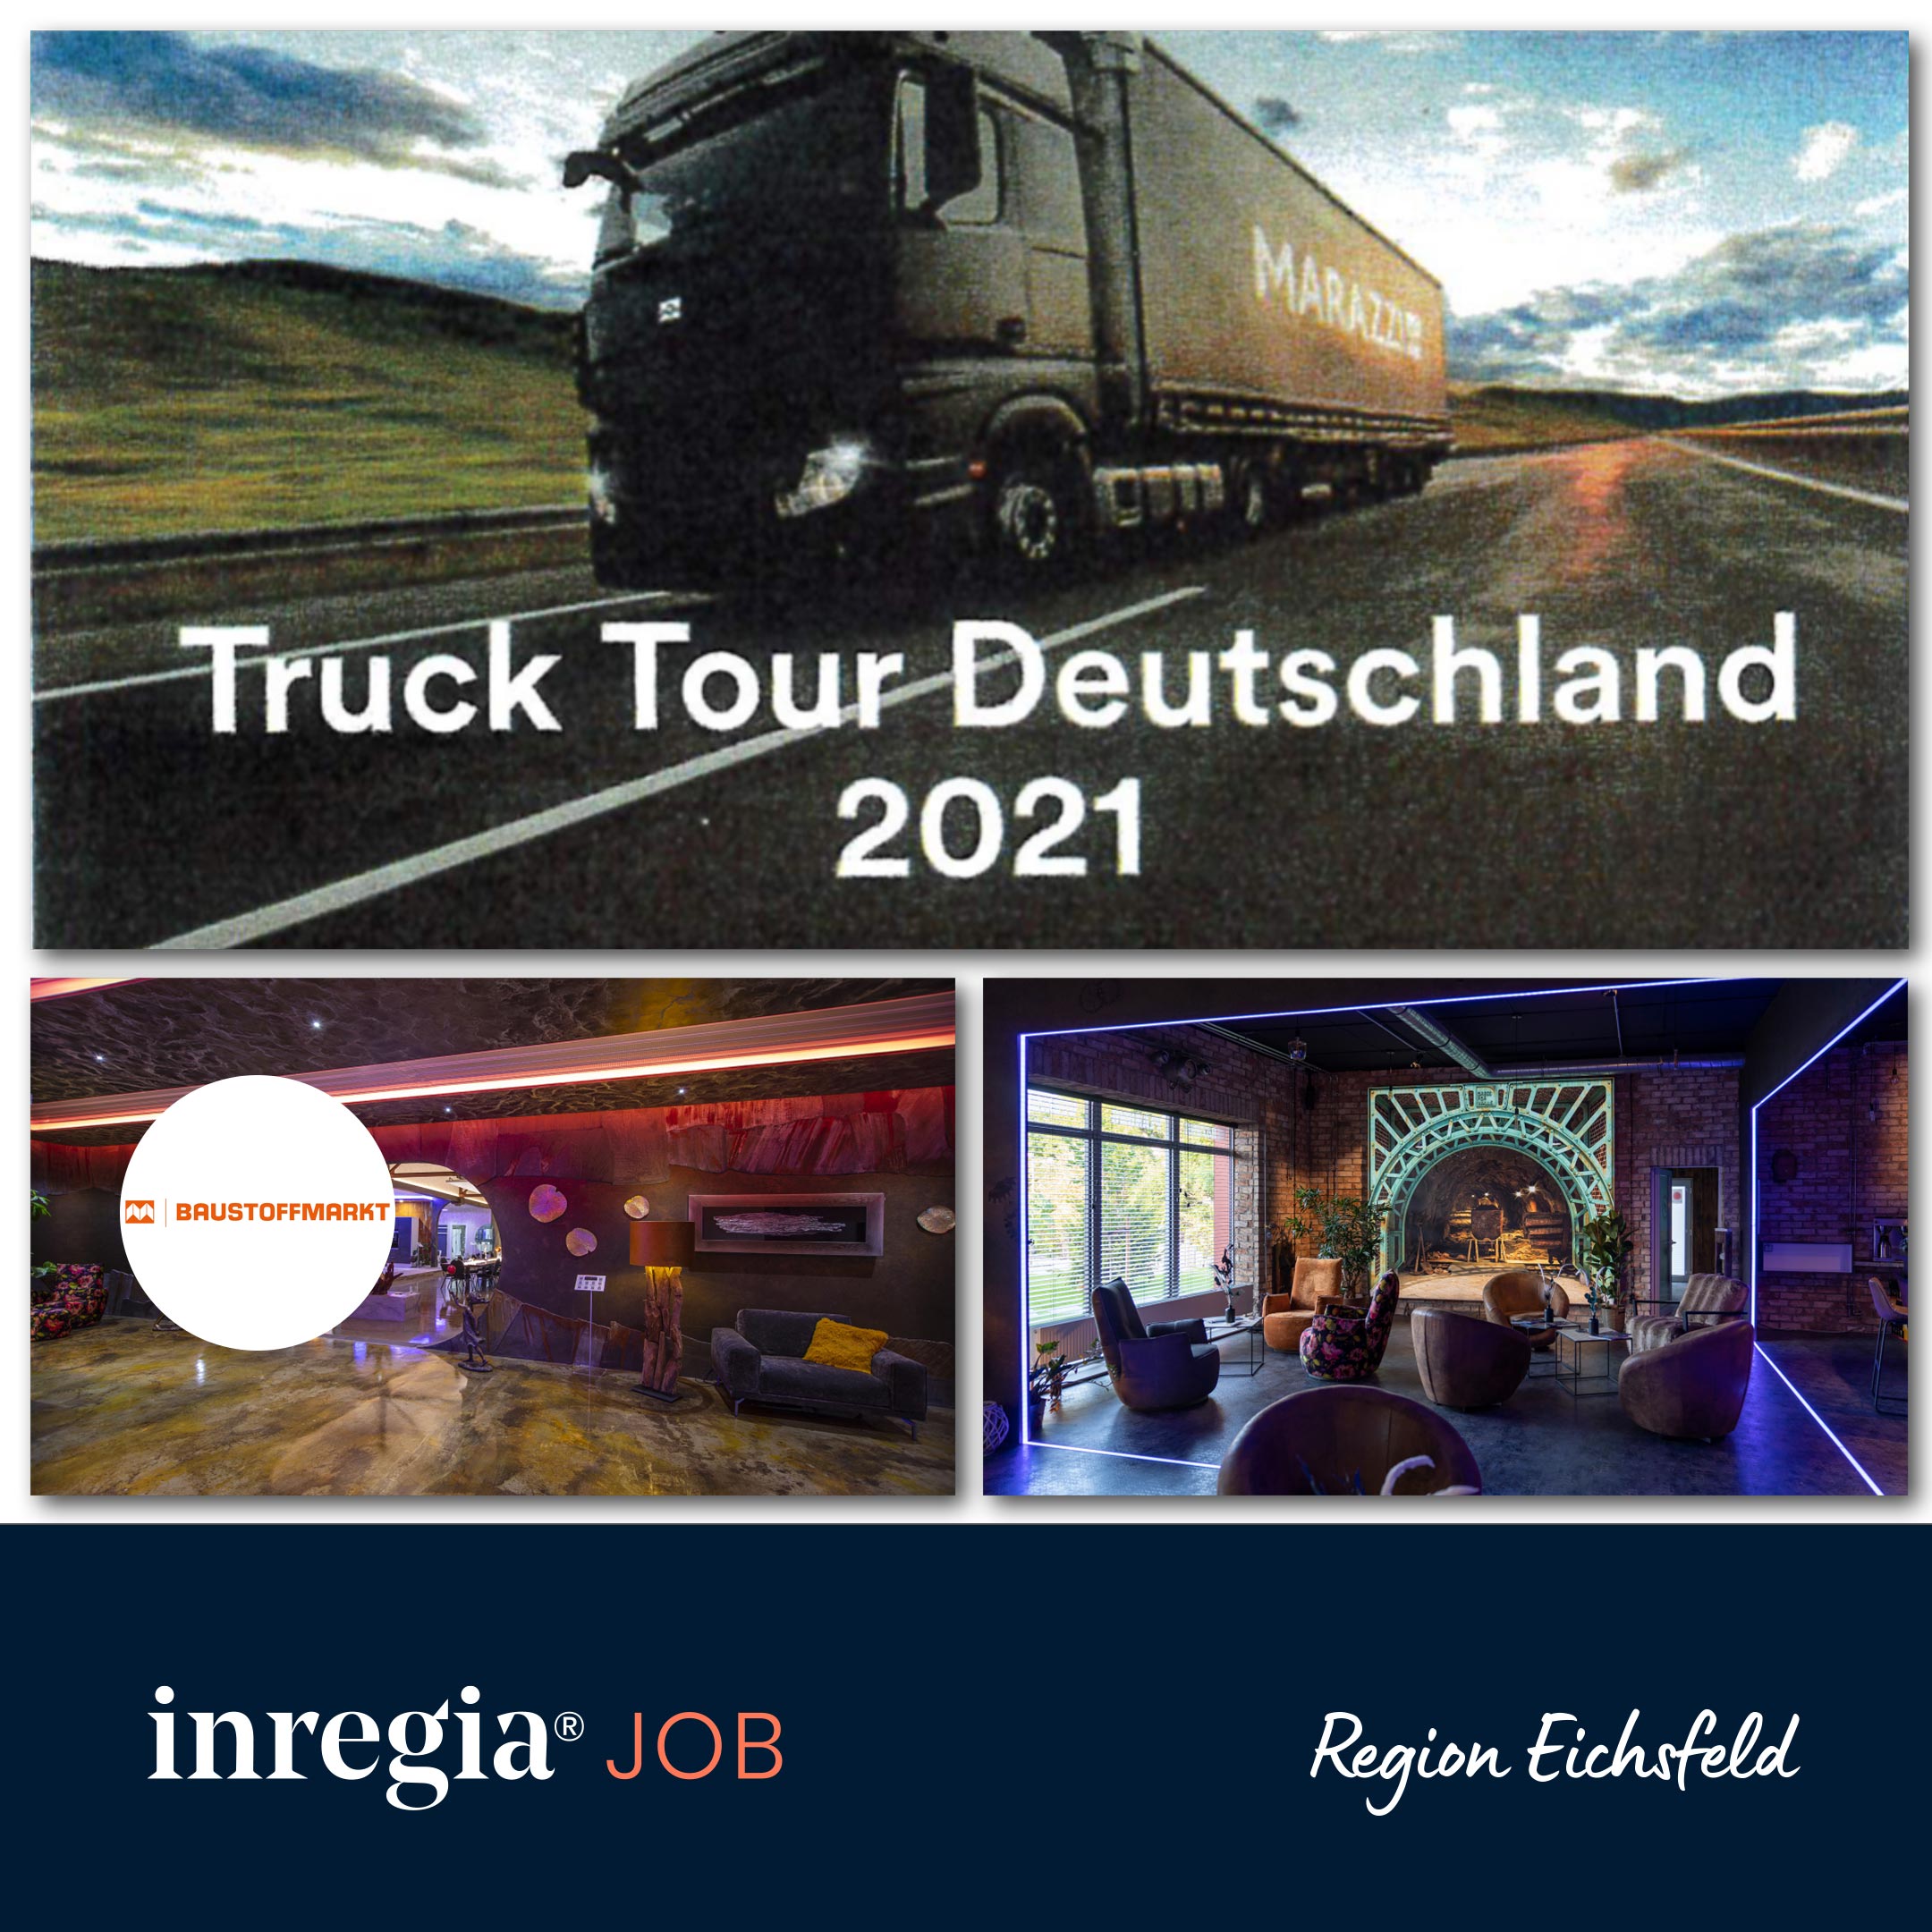 Baustoffmarkt Obereichsfeld – MARAZZI Truck Tour Deutschland im inregia® Center